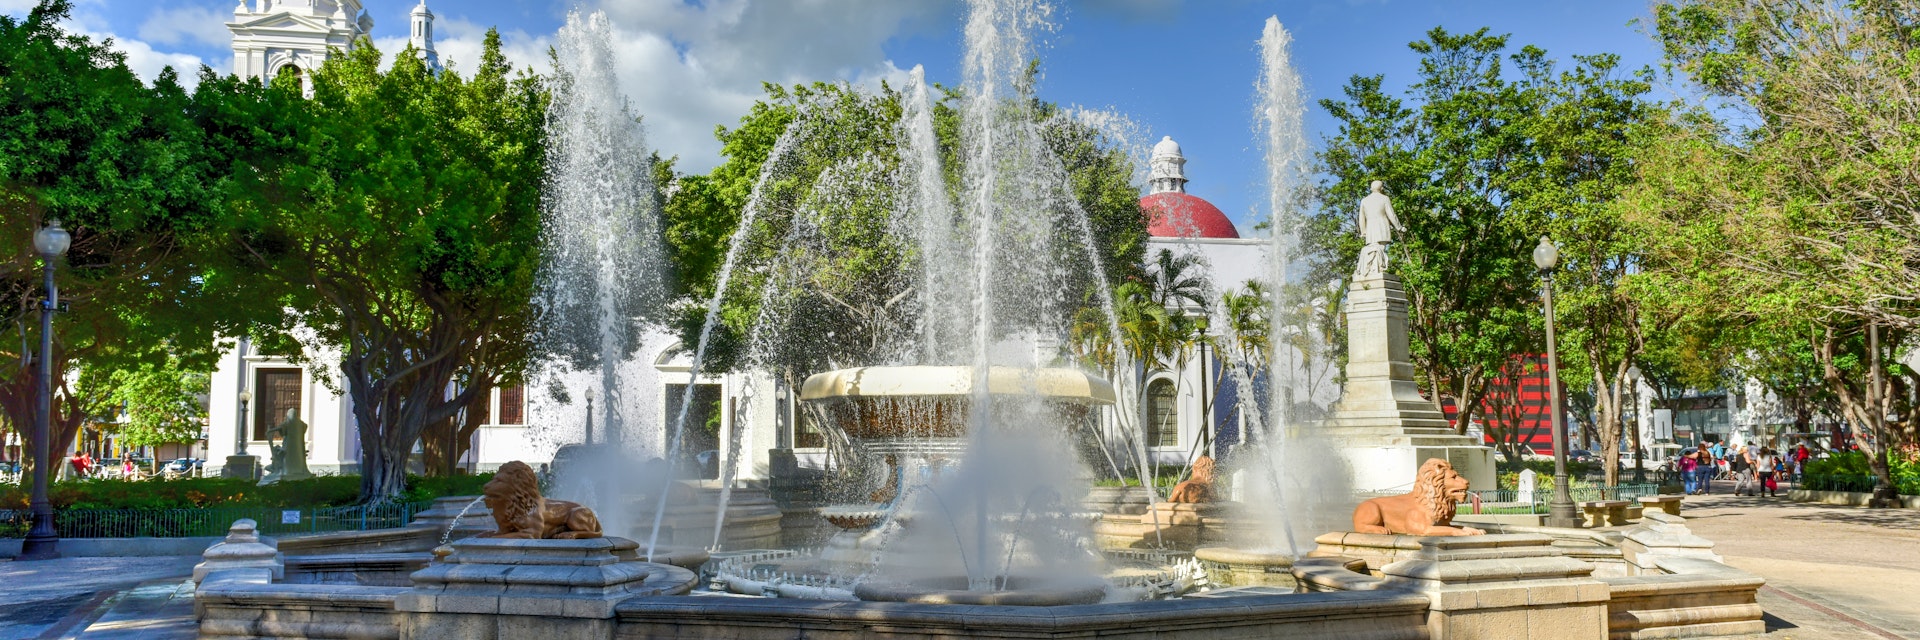 Lion Fountain in Plaza Las Delicias, the main square in Ponce, Puerto Rico.
